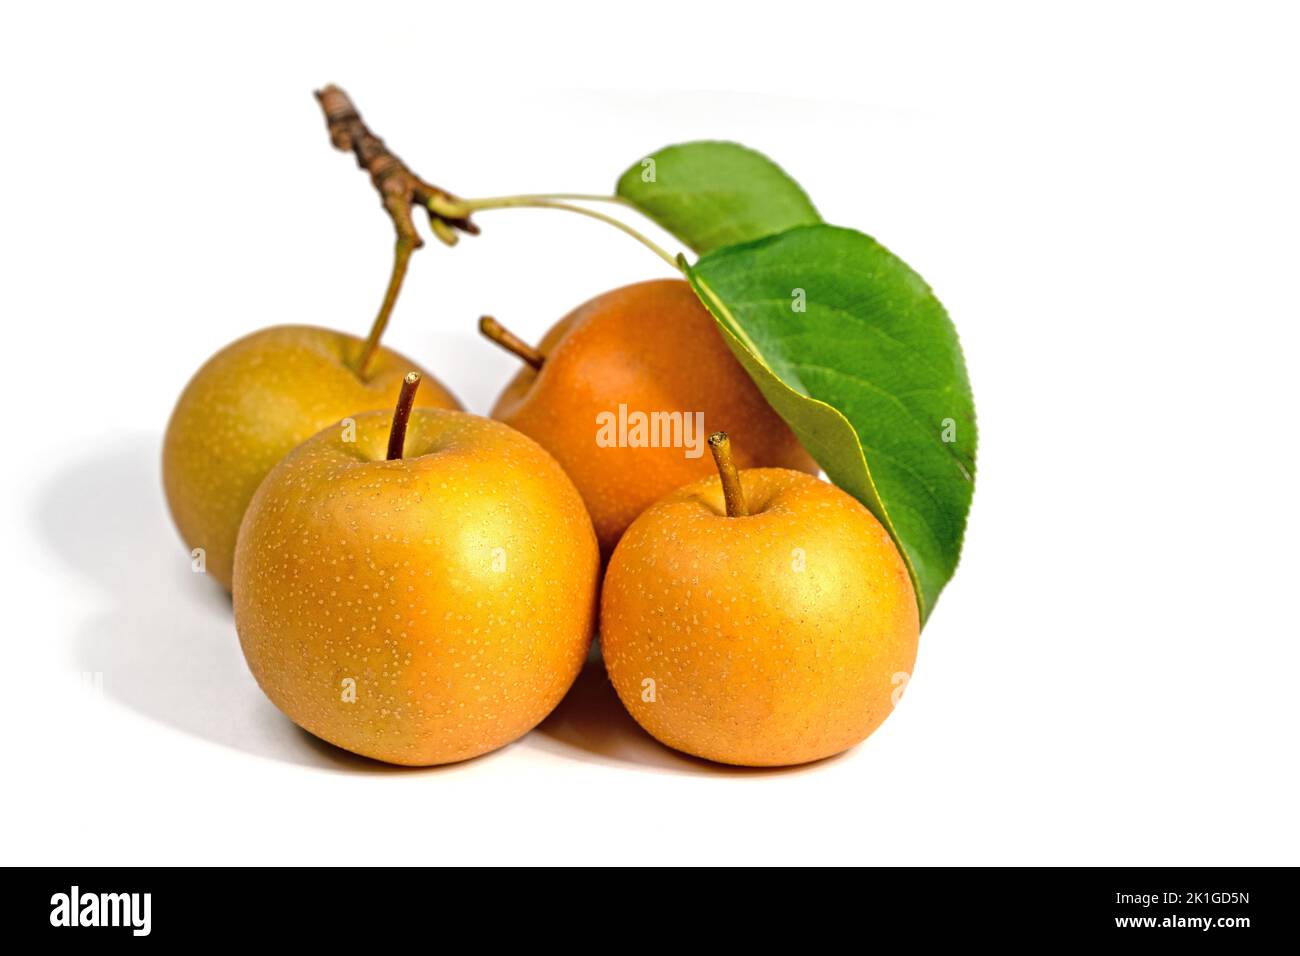 Nashi pears,Pyrus pyrifolia, isolated against white background Stock Photo